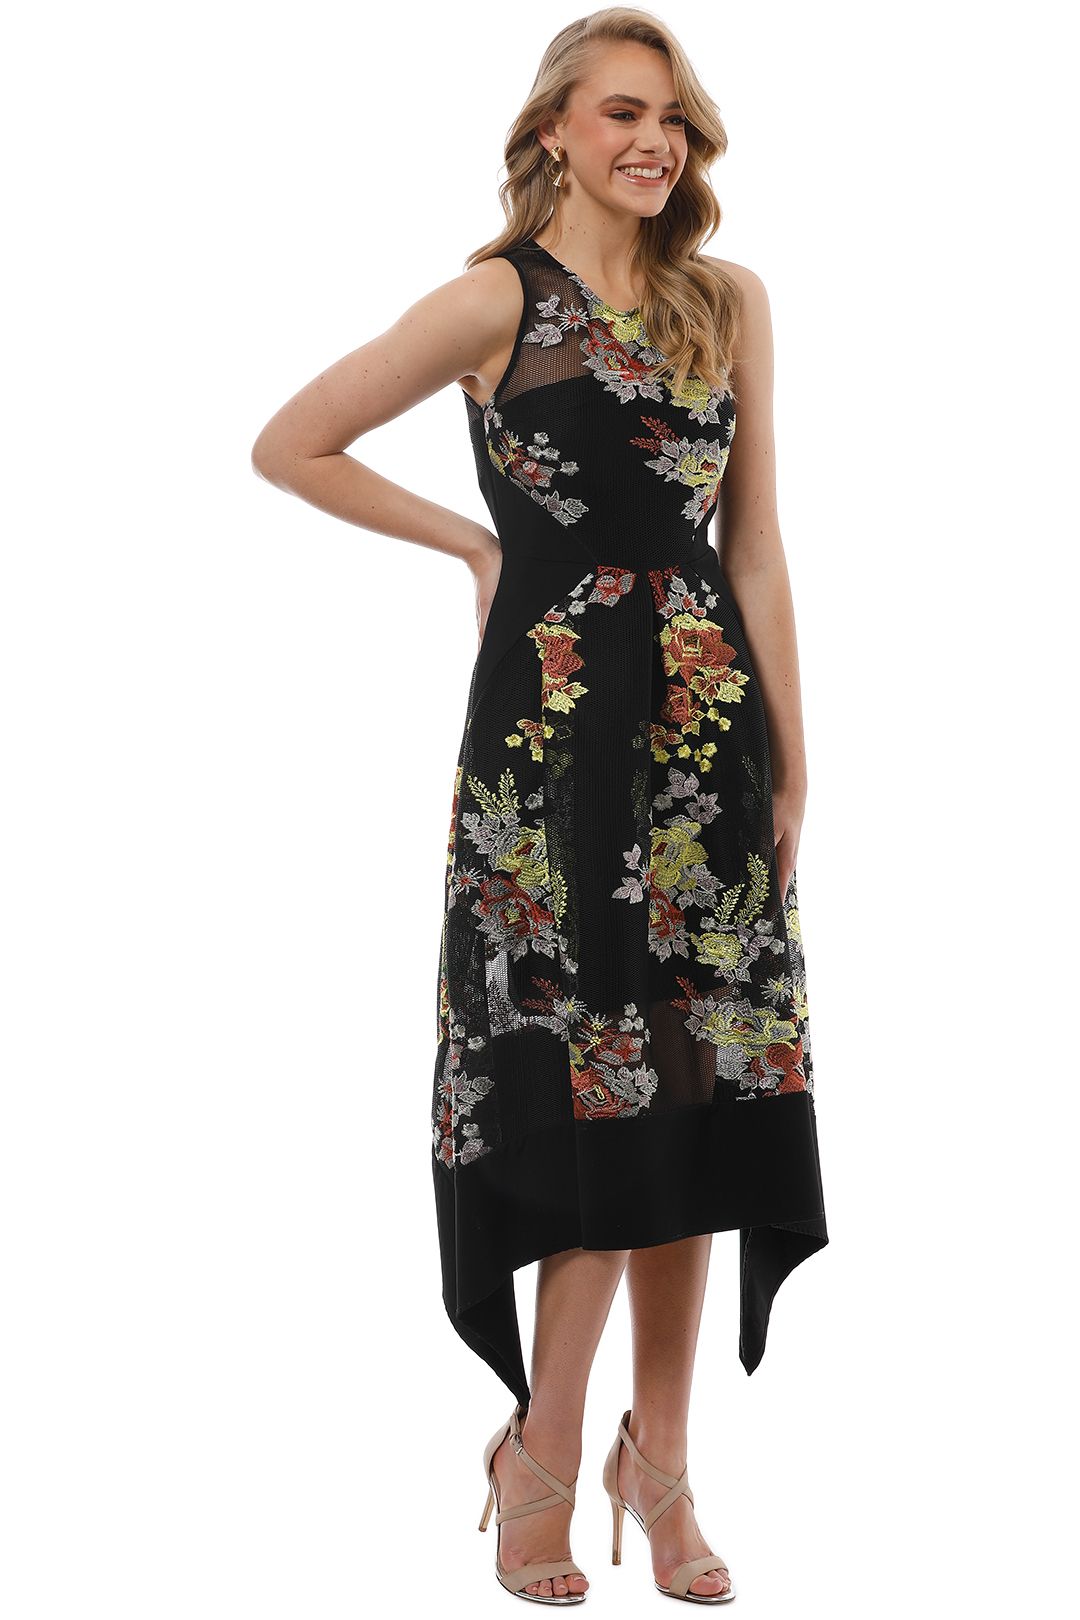 Premonition - Secret Garden Dress - Black Floral - Side